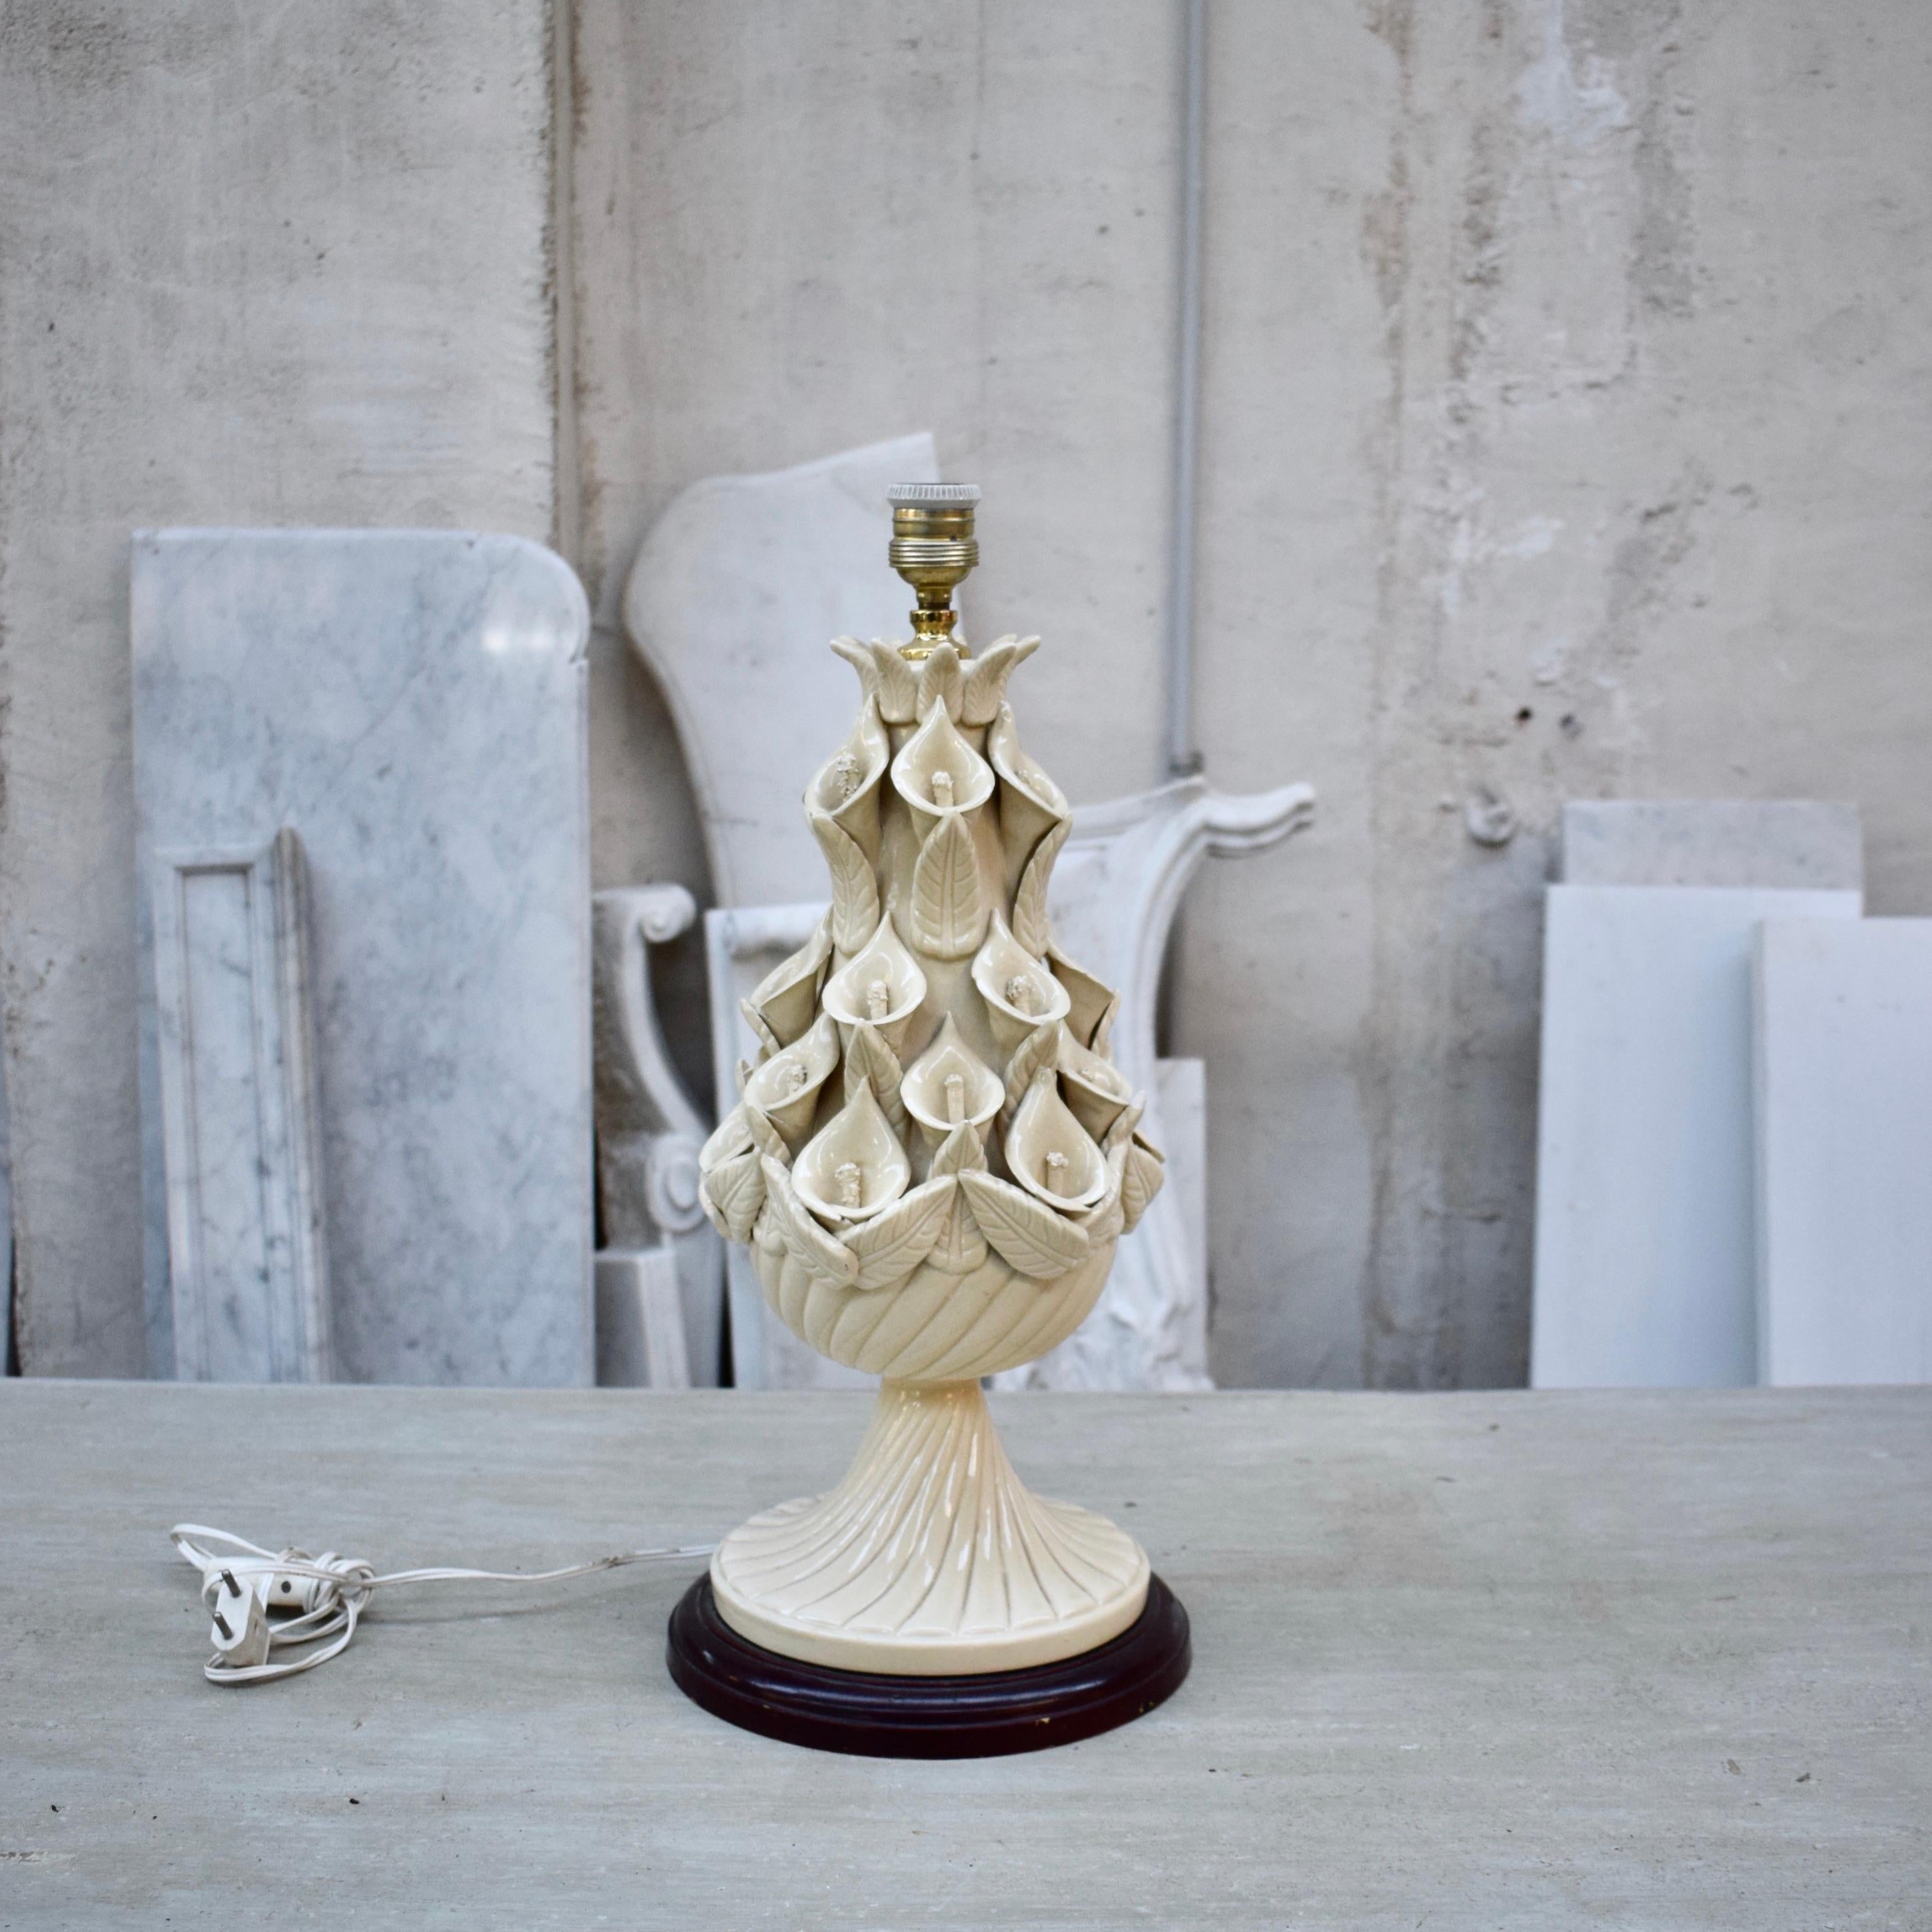 Cette lampe de table vintage en céramique Manises de Ceramica Bondie a été fabriquée en Espagne près de Valence dans les années 1960. Elle est émaillée dans une merveilleuse couleur de céramique ivoire/blanche avec des motifs floraux faits à la main